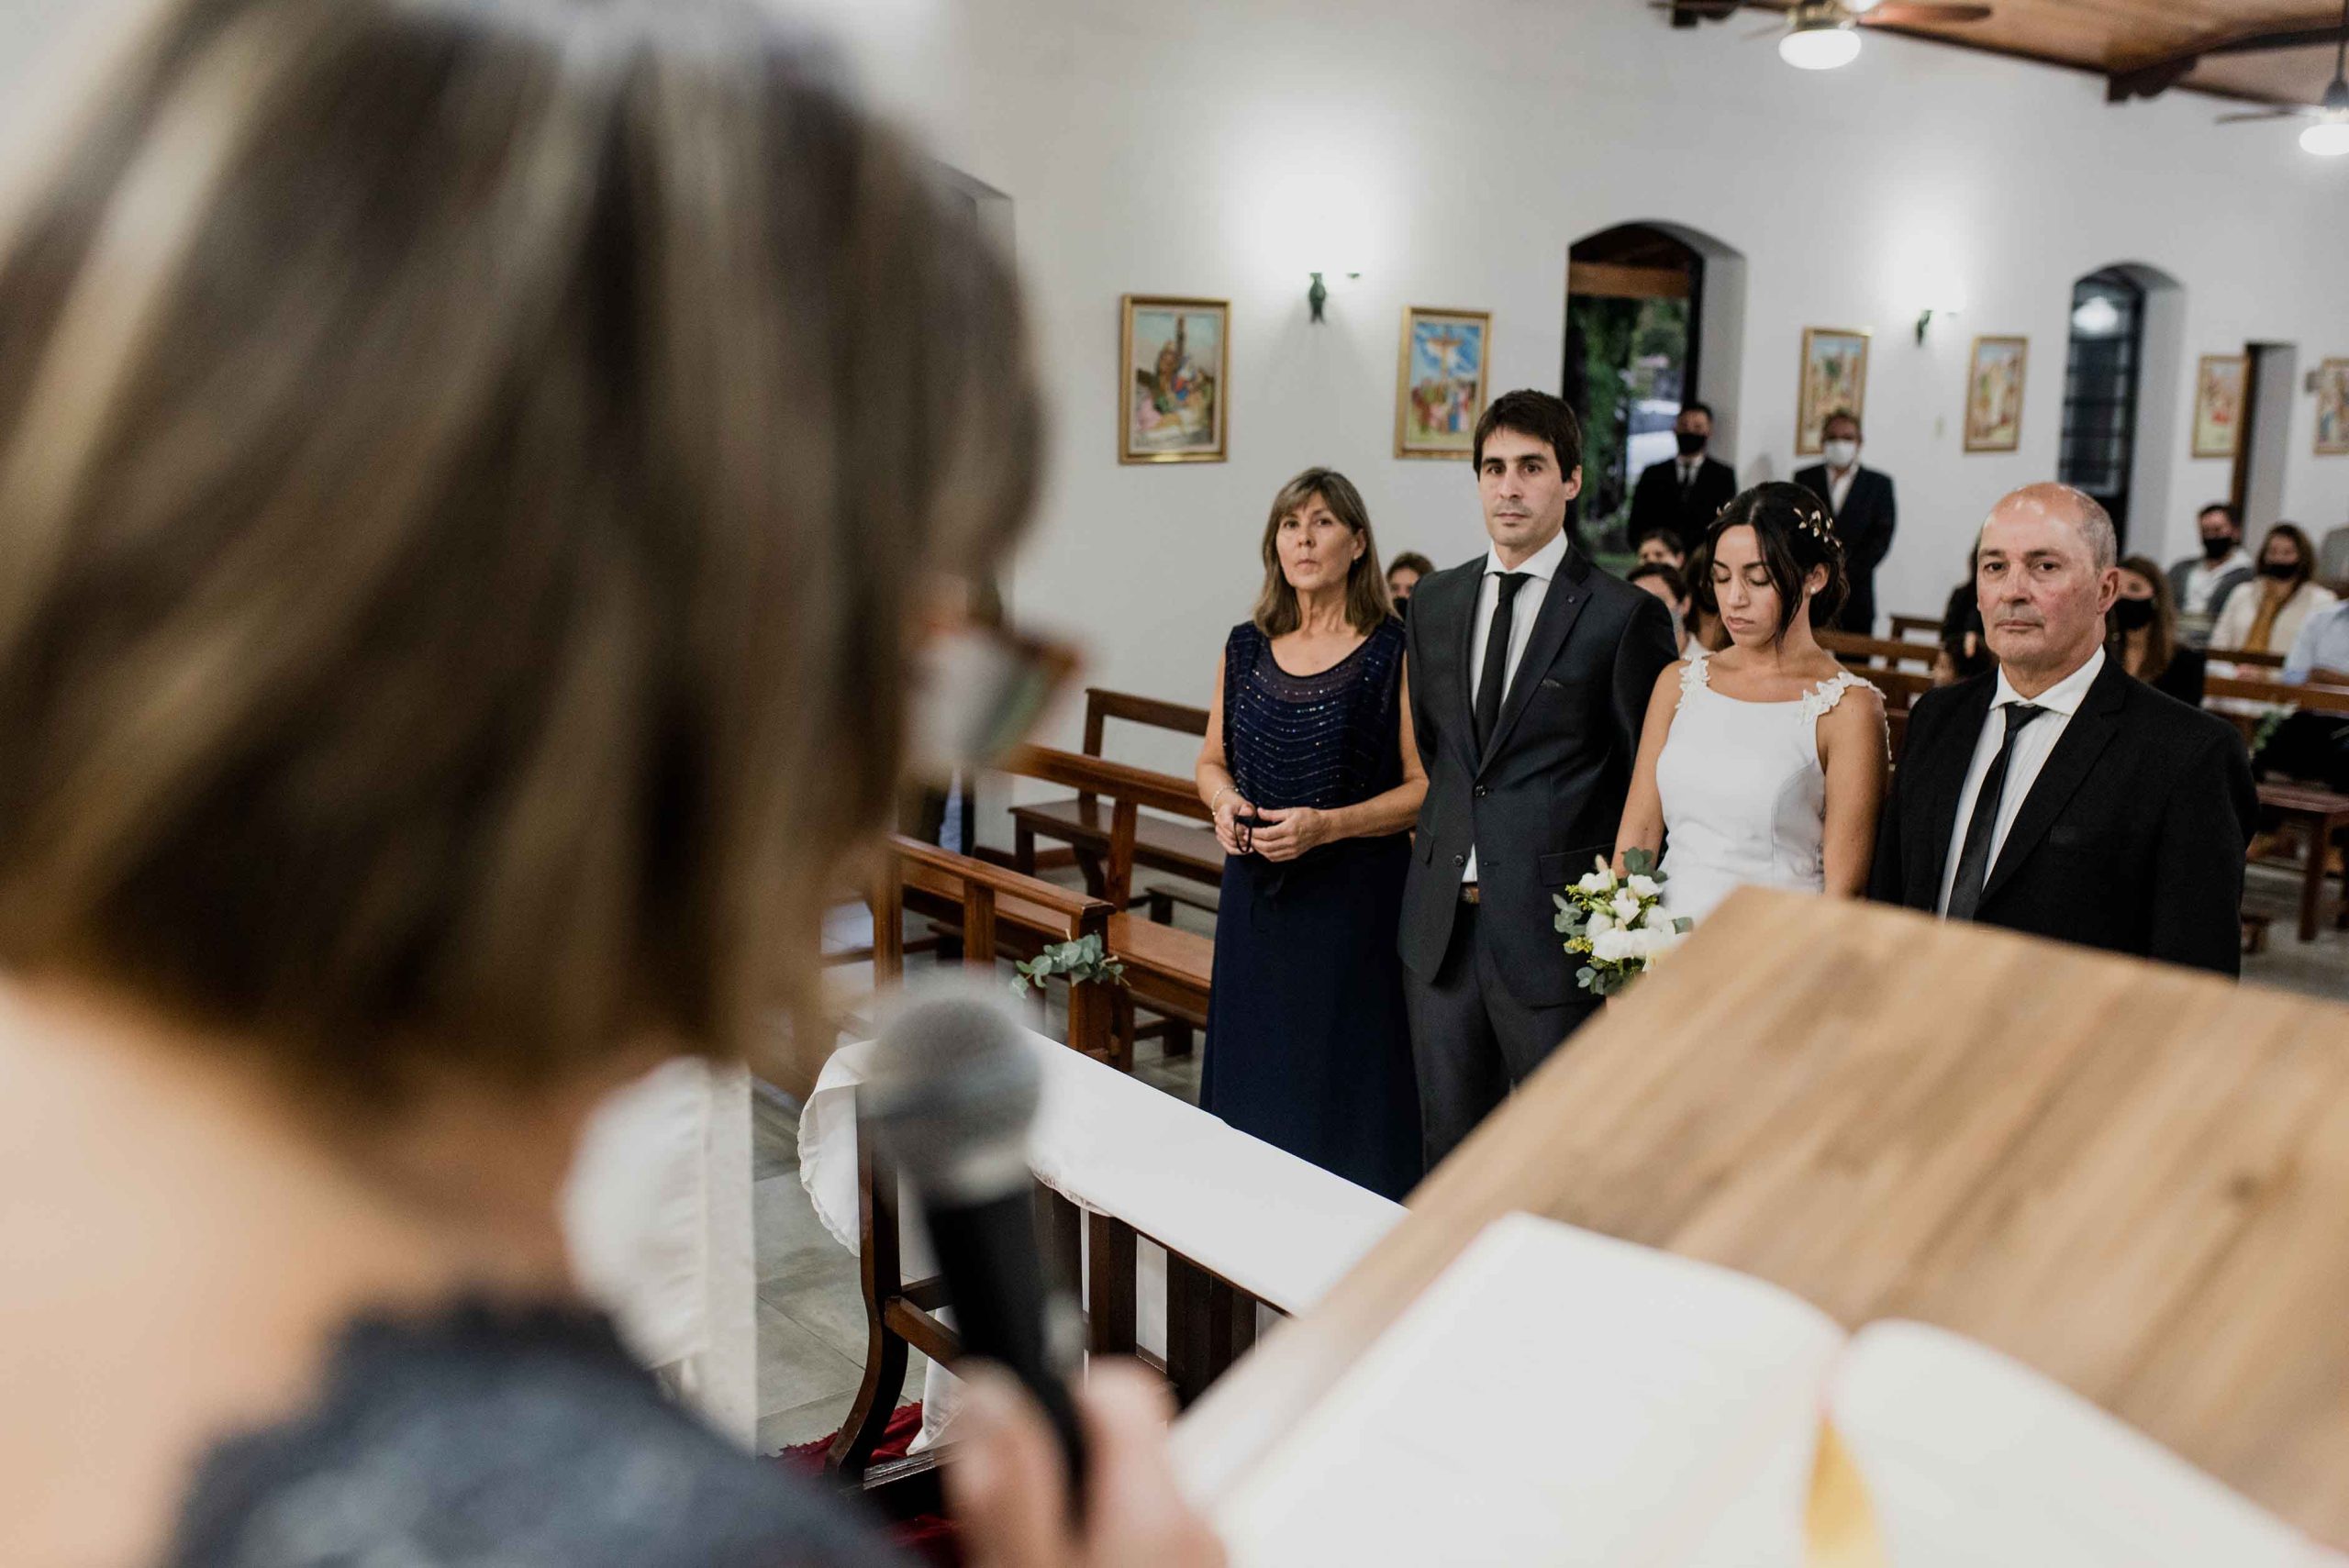 Fotos de la boda de Tania y Alejandro en Venado Tuerto  realizadas por Bucle Fotografias Flor Bosio y Caro Clerici